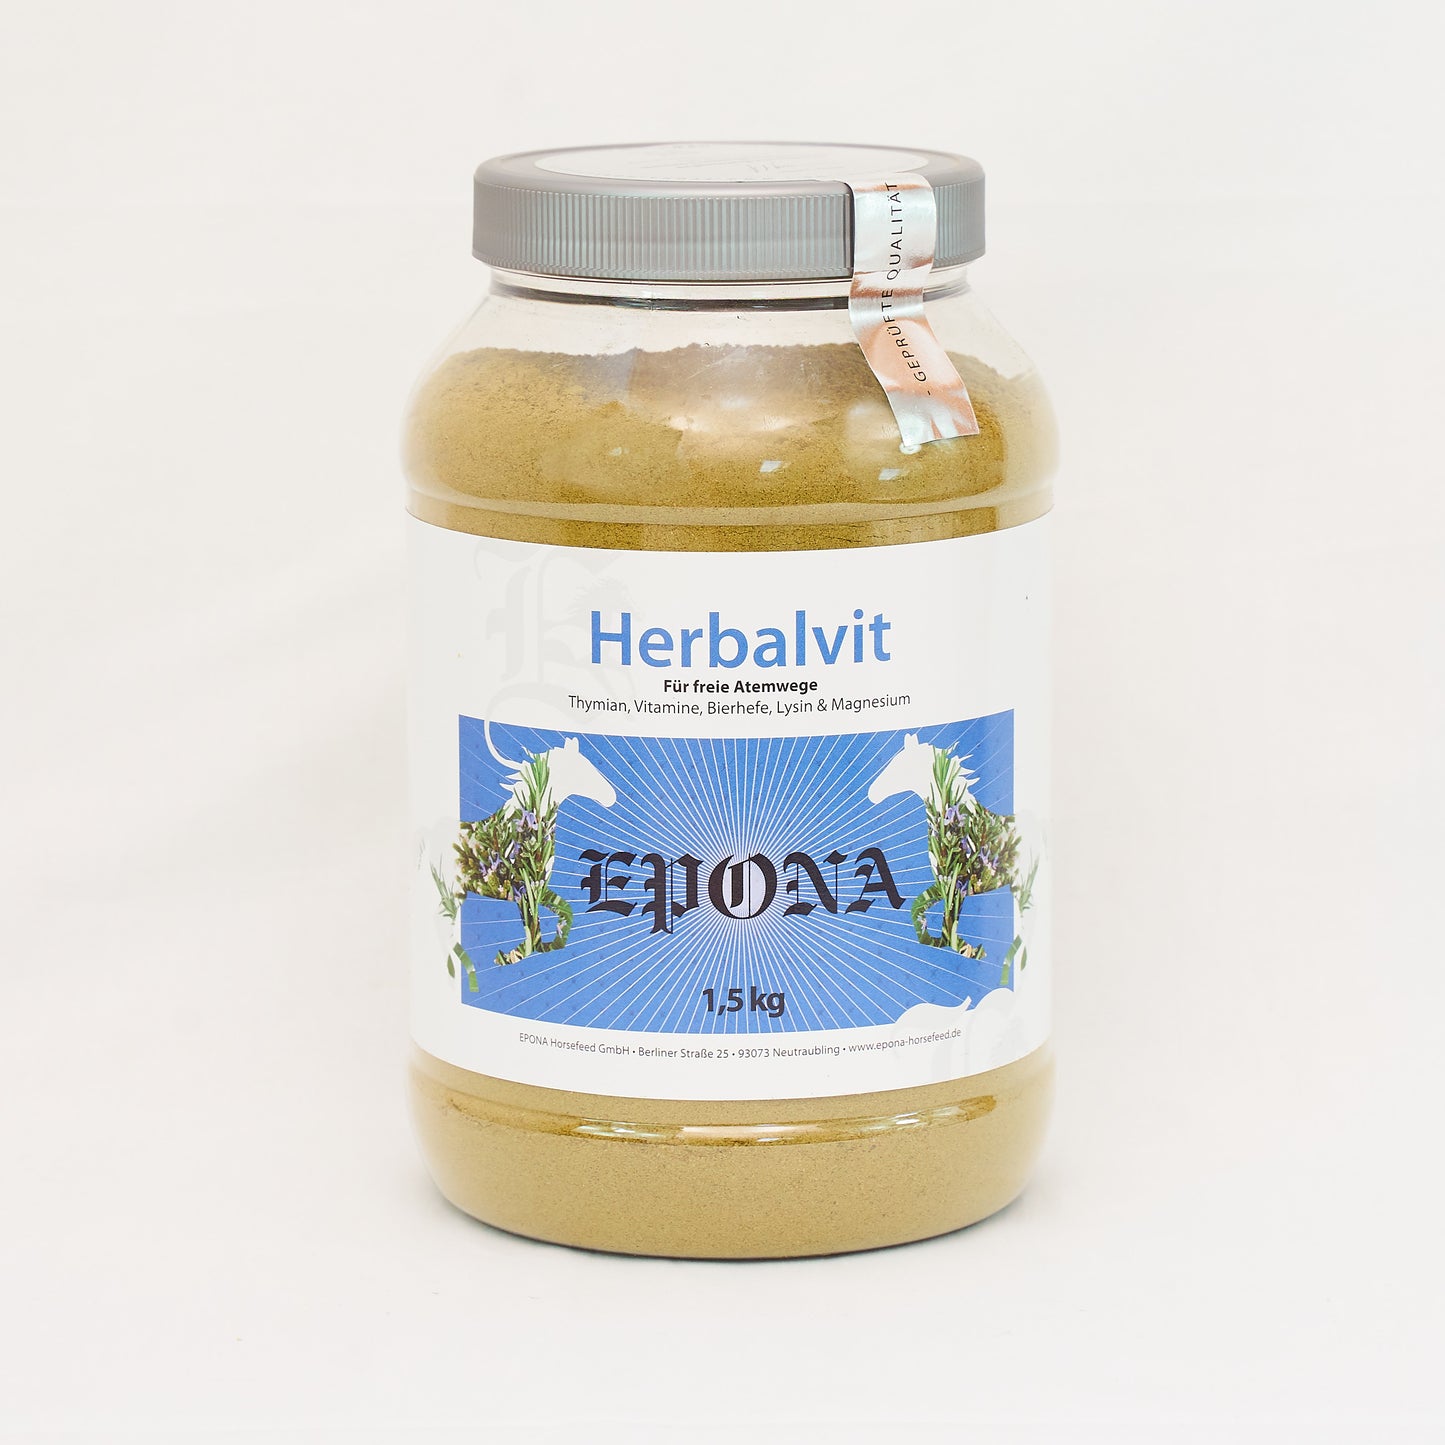 Herbalvit - Kräutermischung mit hohen Gehalt an ätherischen Ölen sowie Vitamin C + E